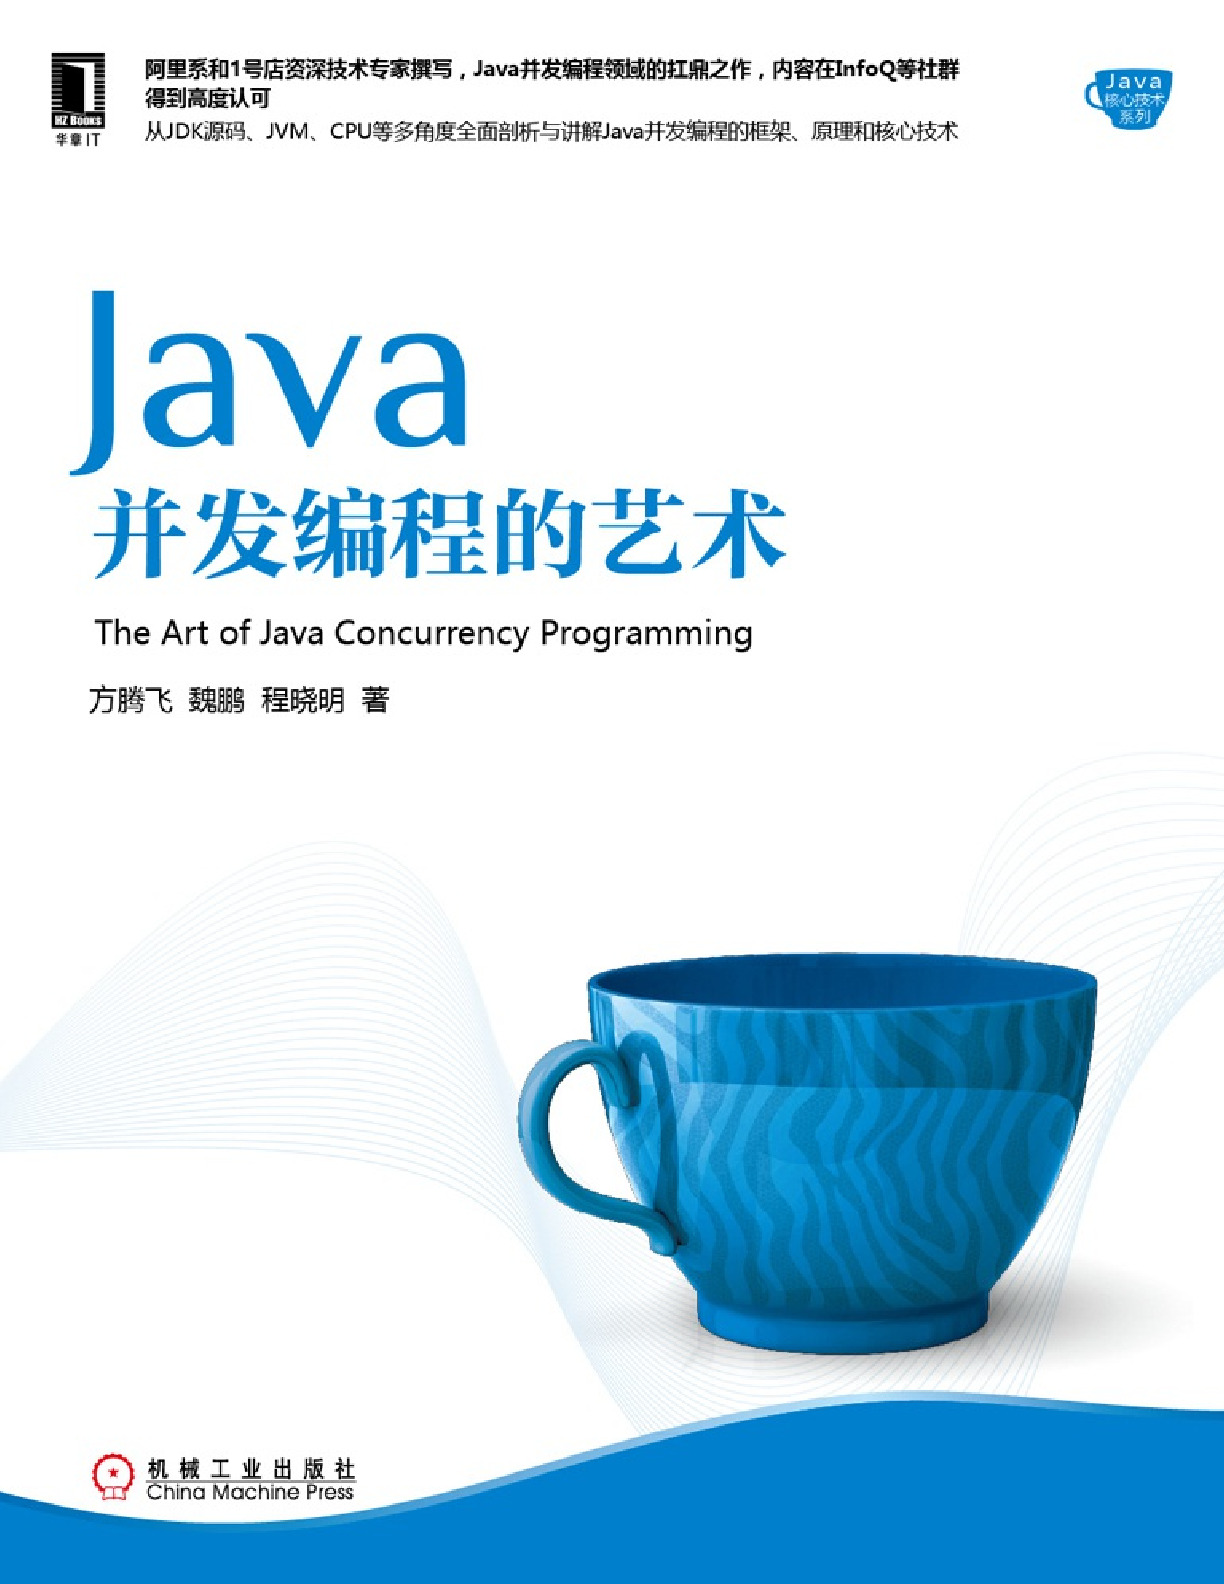 Java并发编程的艺术(方腾飞)